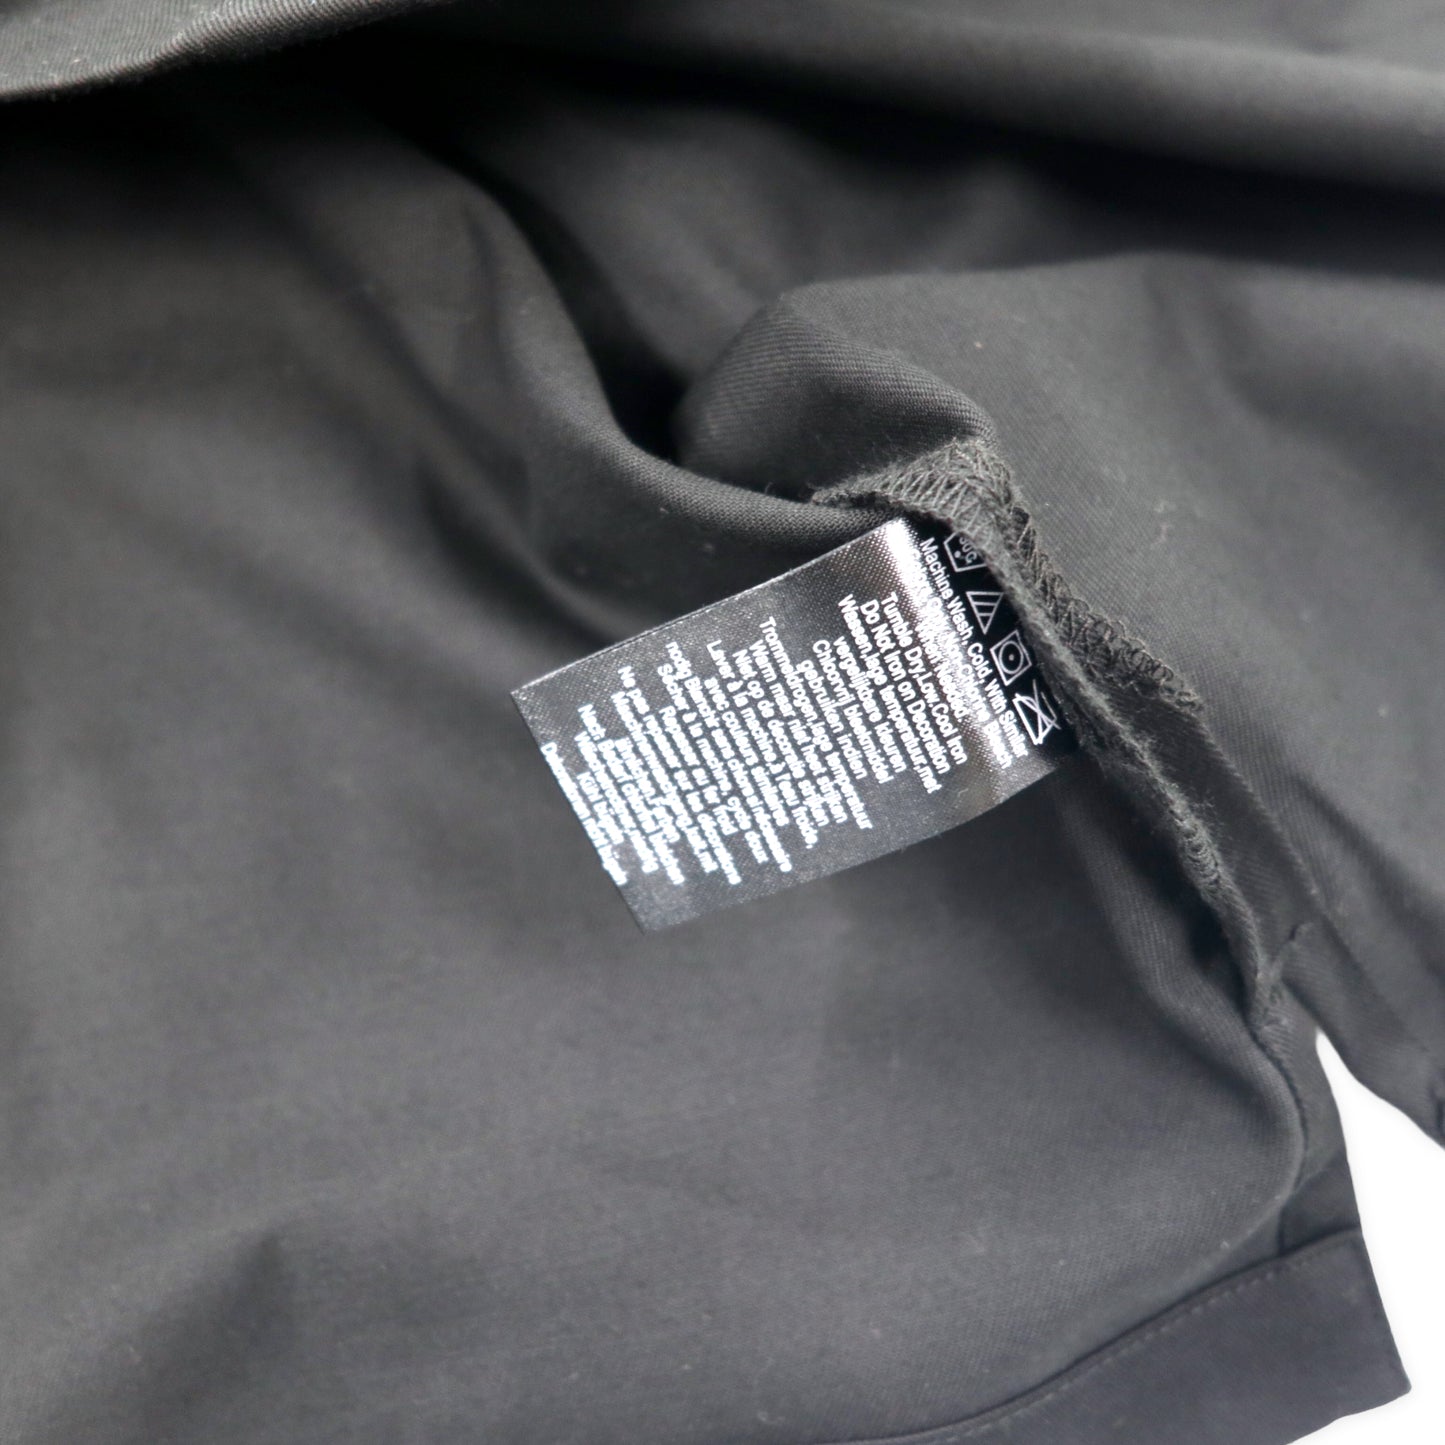 HARLEY DAVIDSON 半袖 オープンカラー ワークシャツ XL ブラック コットン ロゴプリント ビッグサイズ